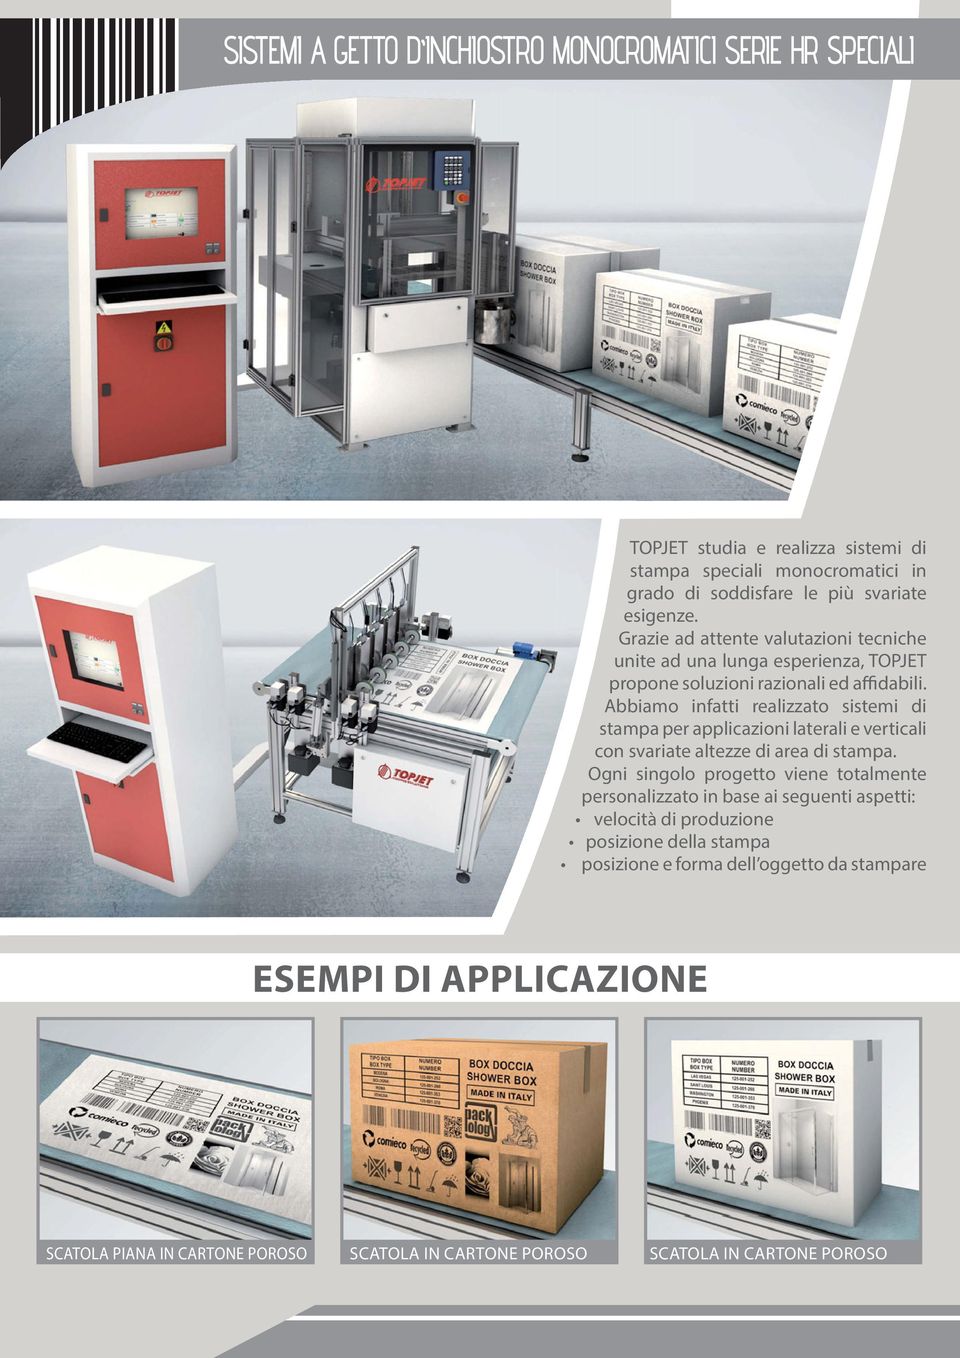 Abbiamo infatti realizzato sistemi di stampa per applicazioni laterali e verticali con svariate altezze di area di stampa.